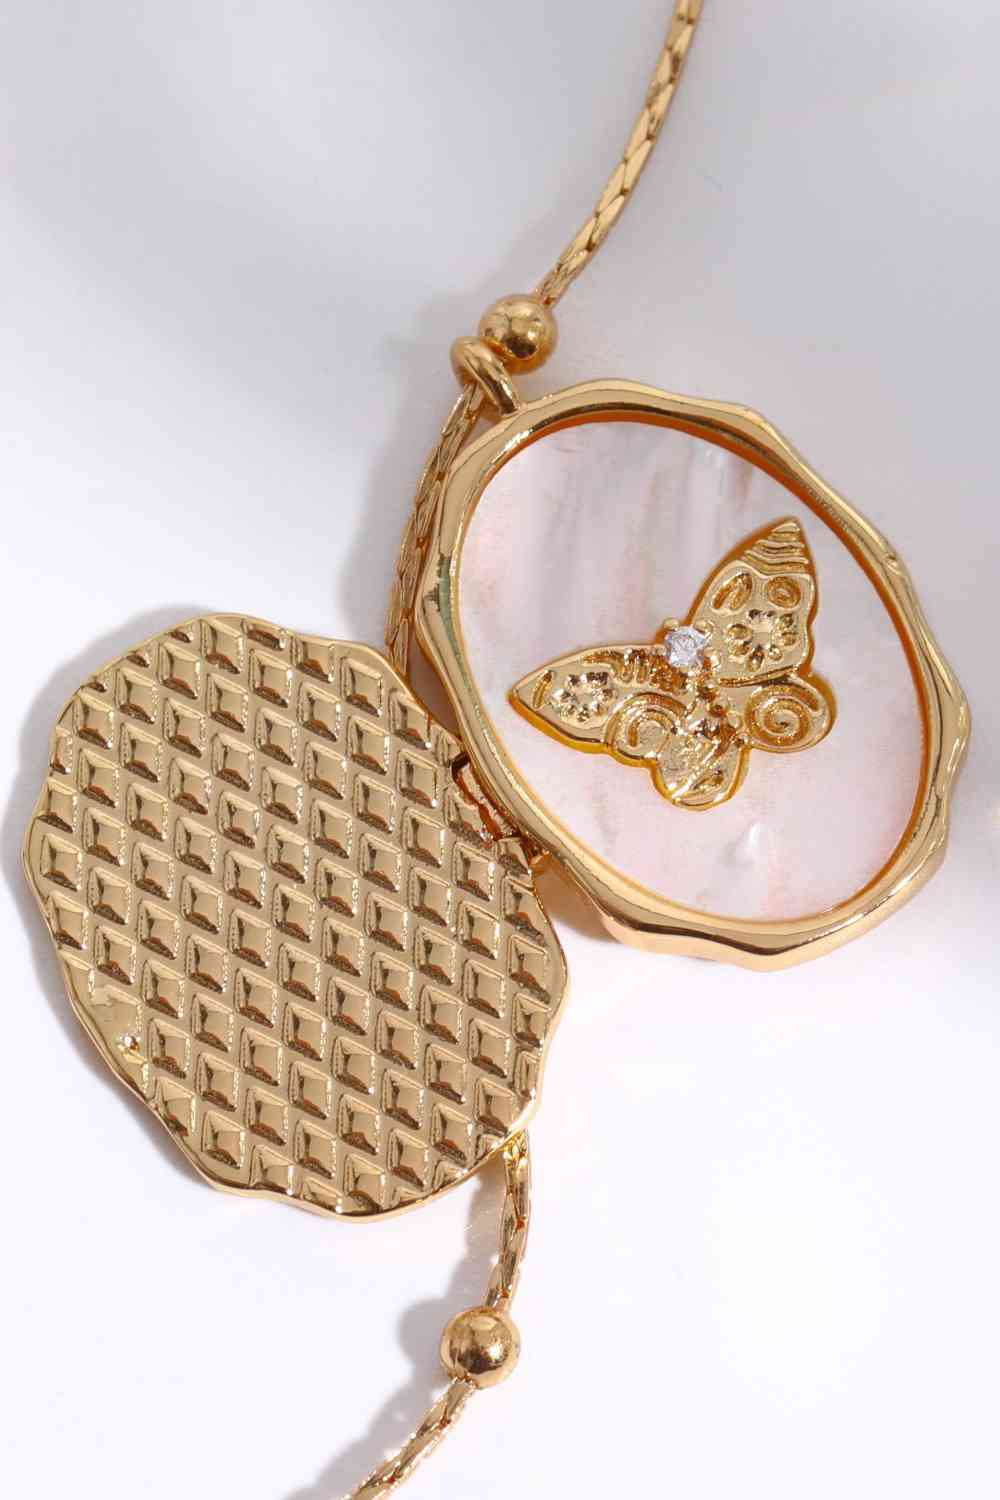 Kupfer-Halskette mit Schmetterlings-Muschel-Anhänger